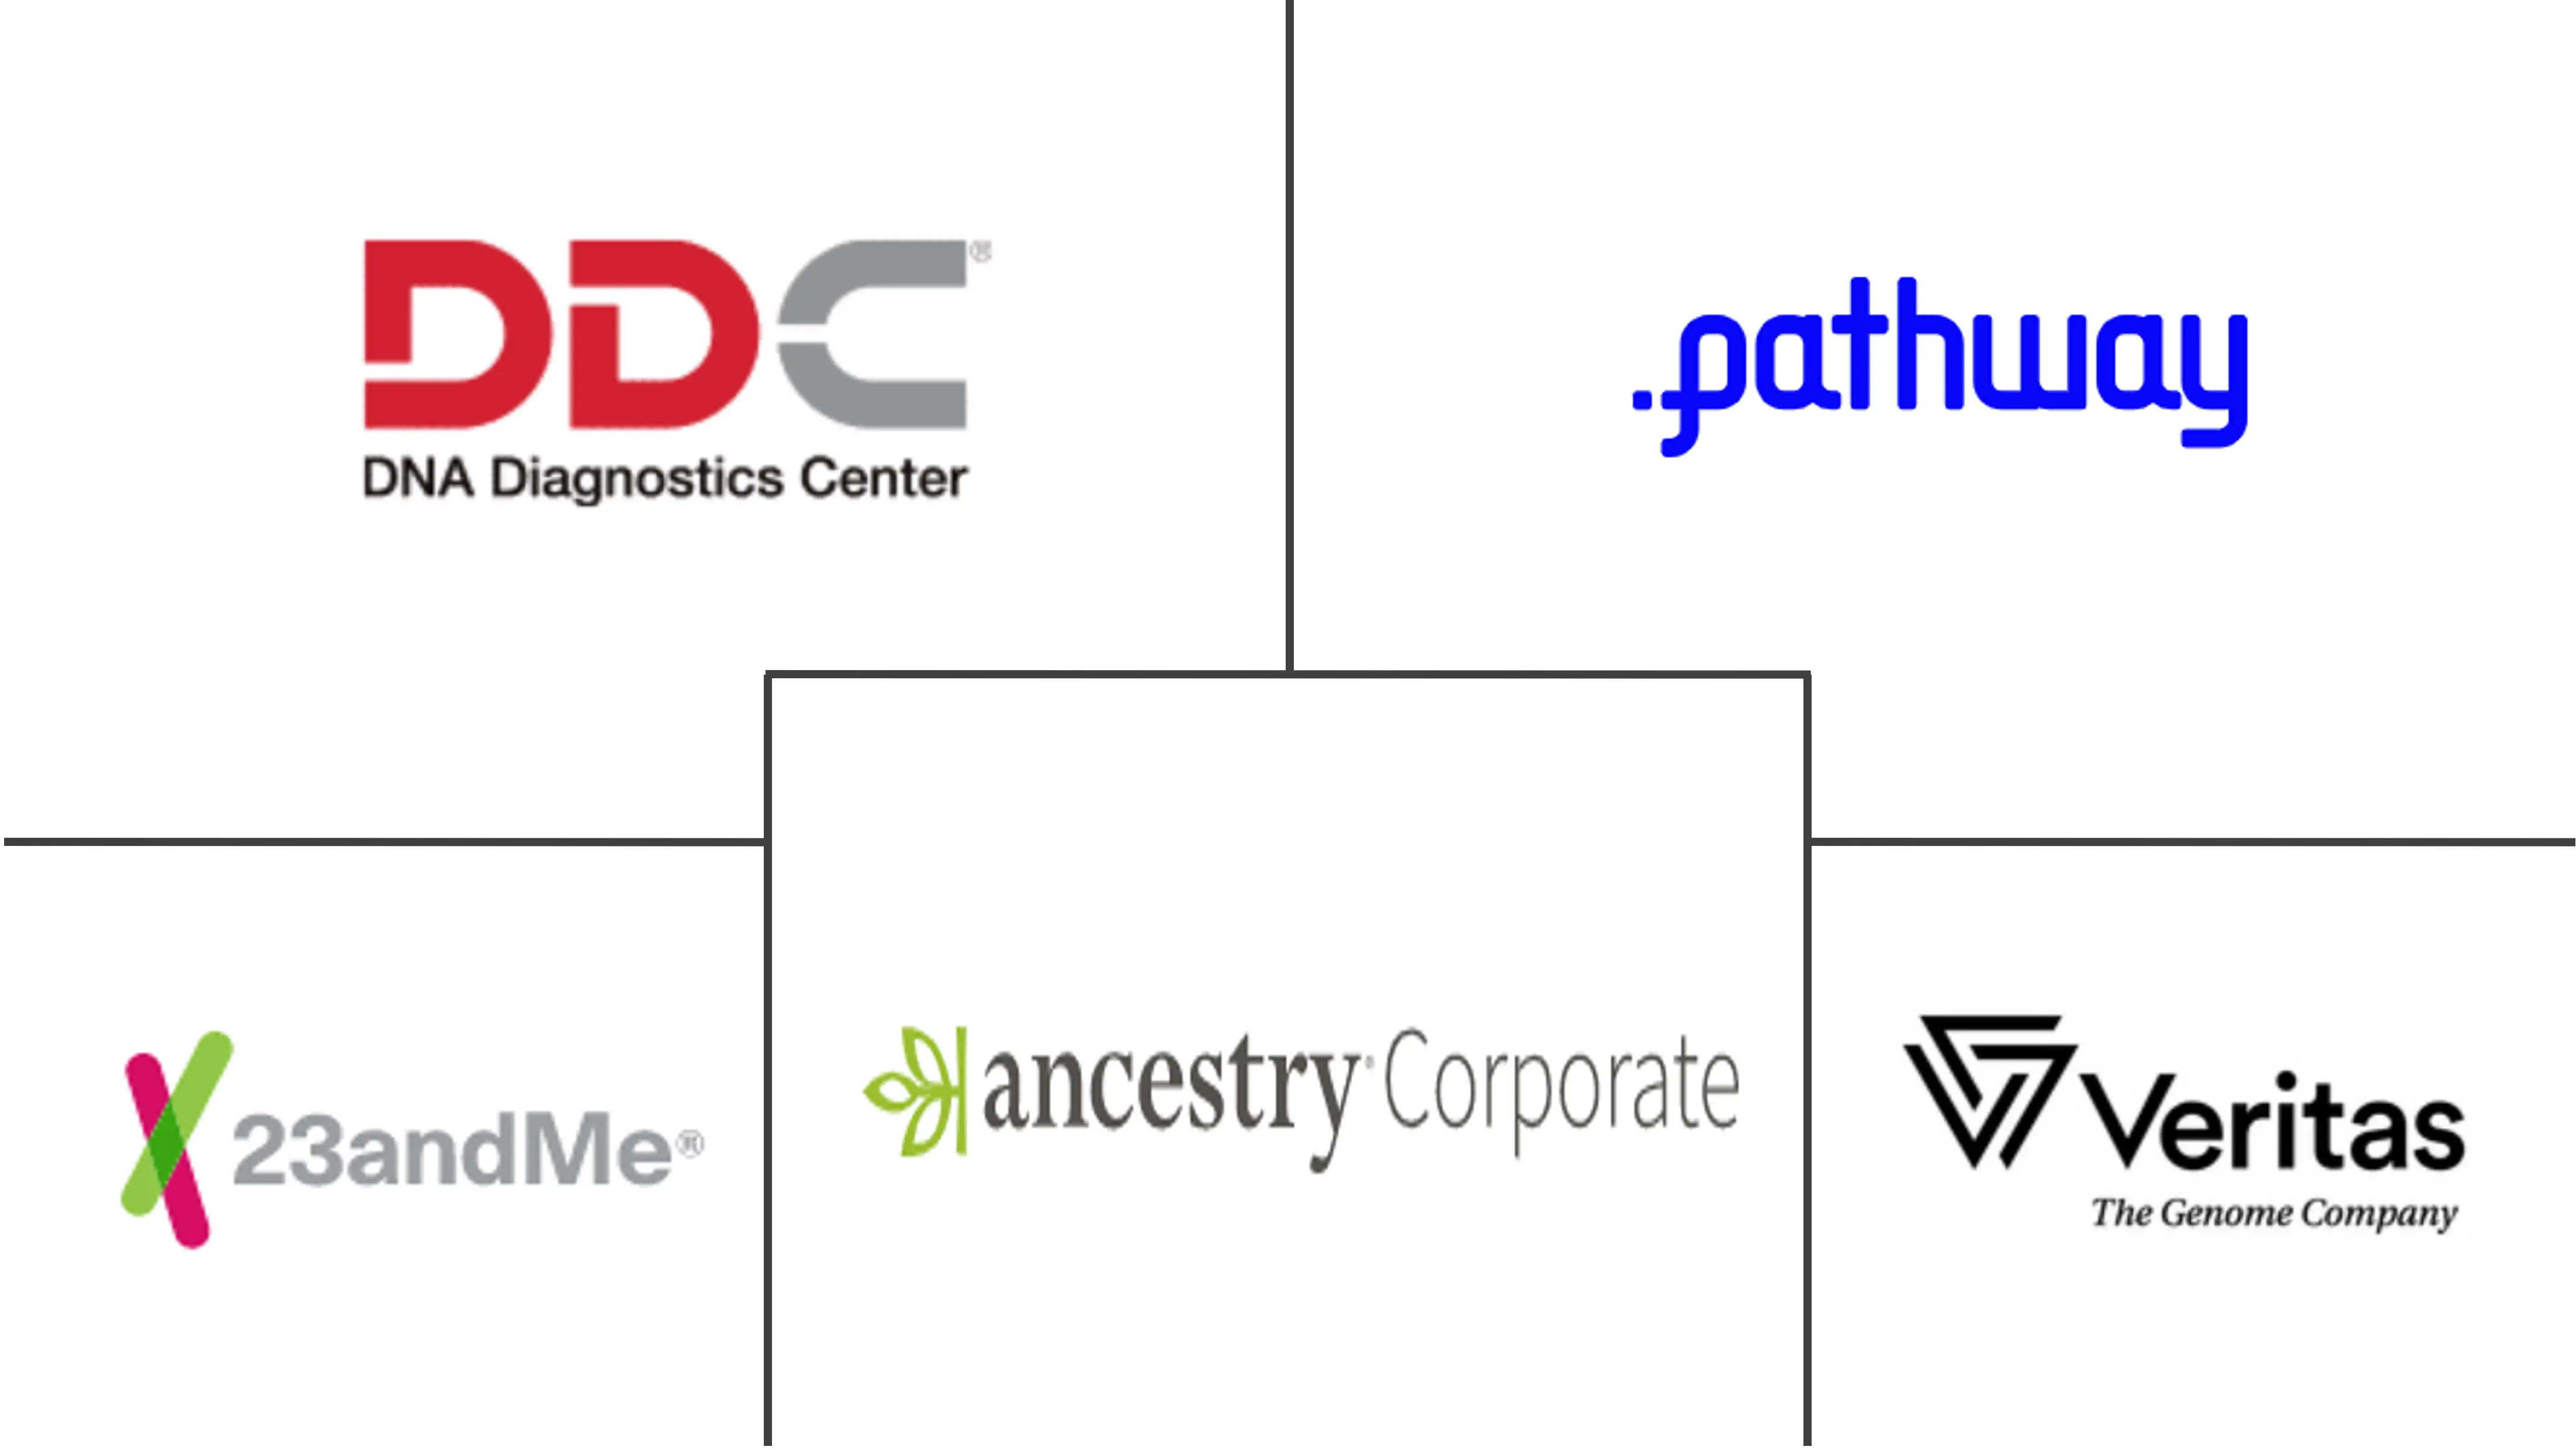 Globaler Markt für DTC-DNA-Testkits (Direct to Consumer).